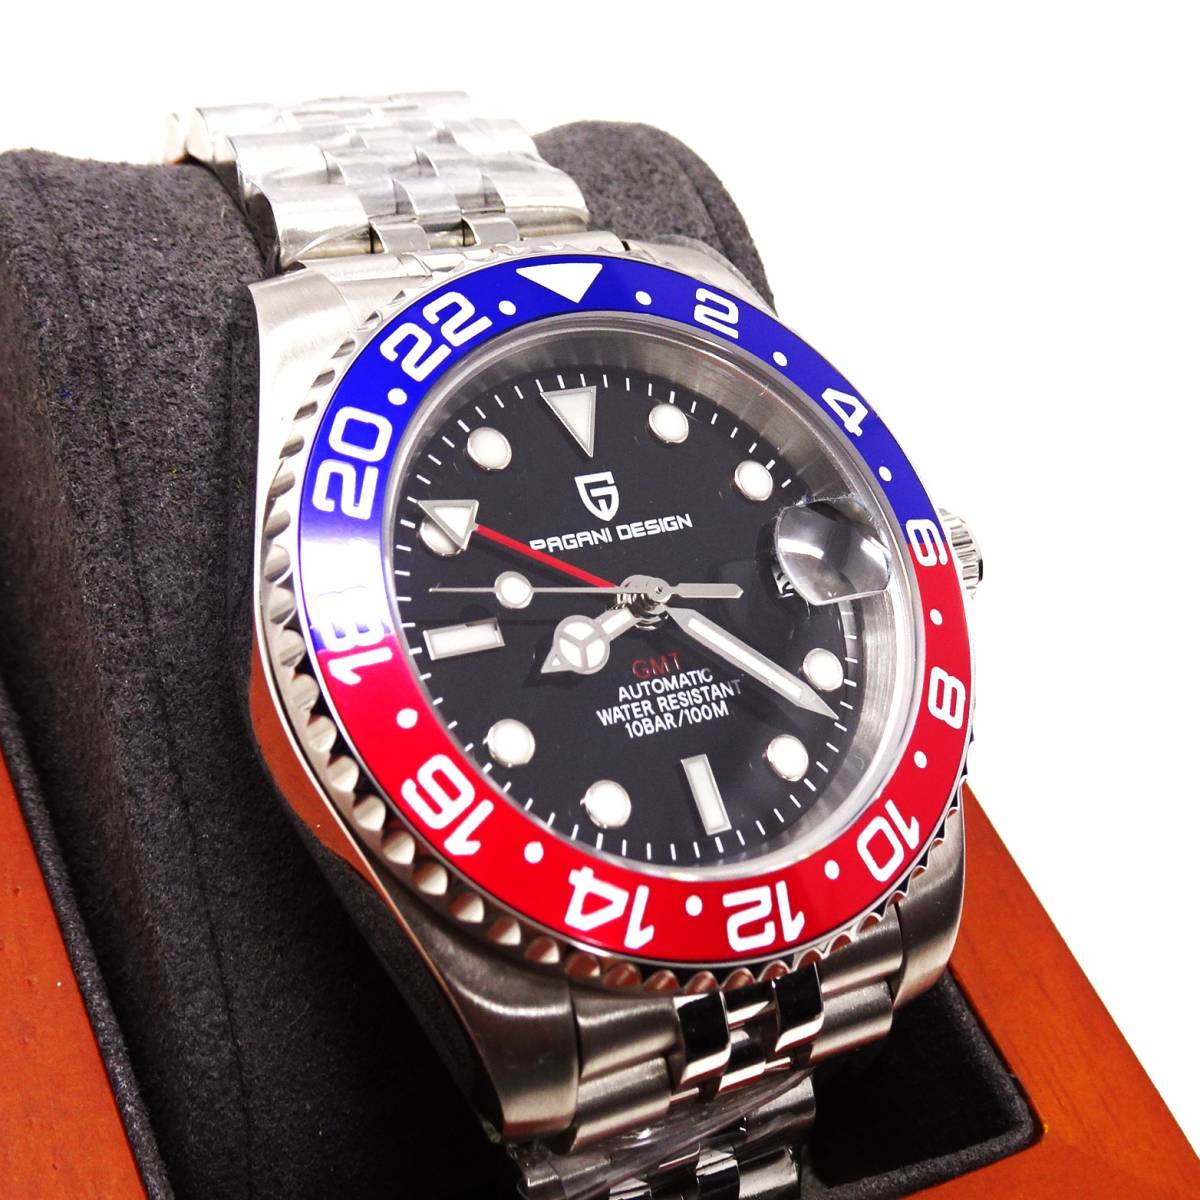 送料無料・新品・パガーニデザイン・メンズ・機械式腕時計 ・GMT針オマージュウオッチ・ペプシベゼル・ジュビリーメタルストラップPD-1662_画像5